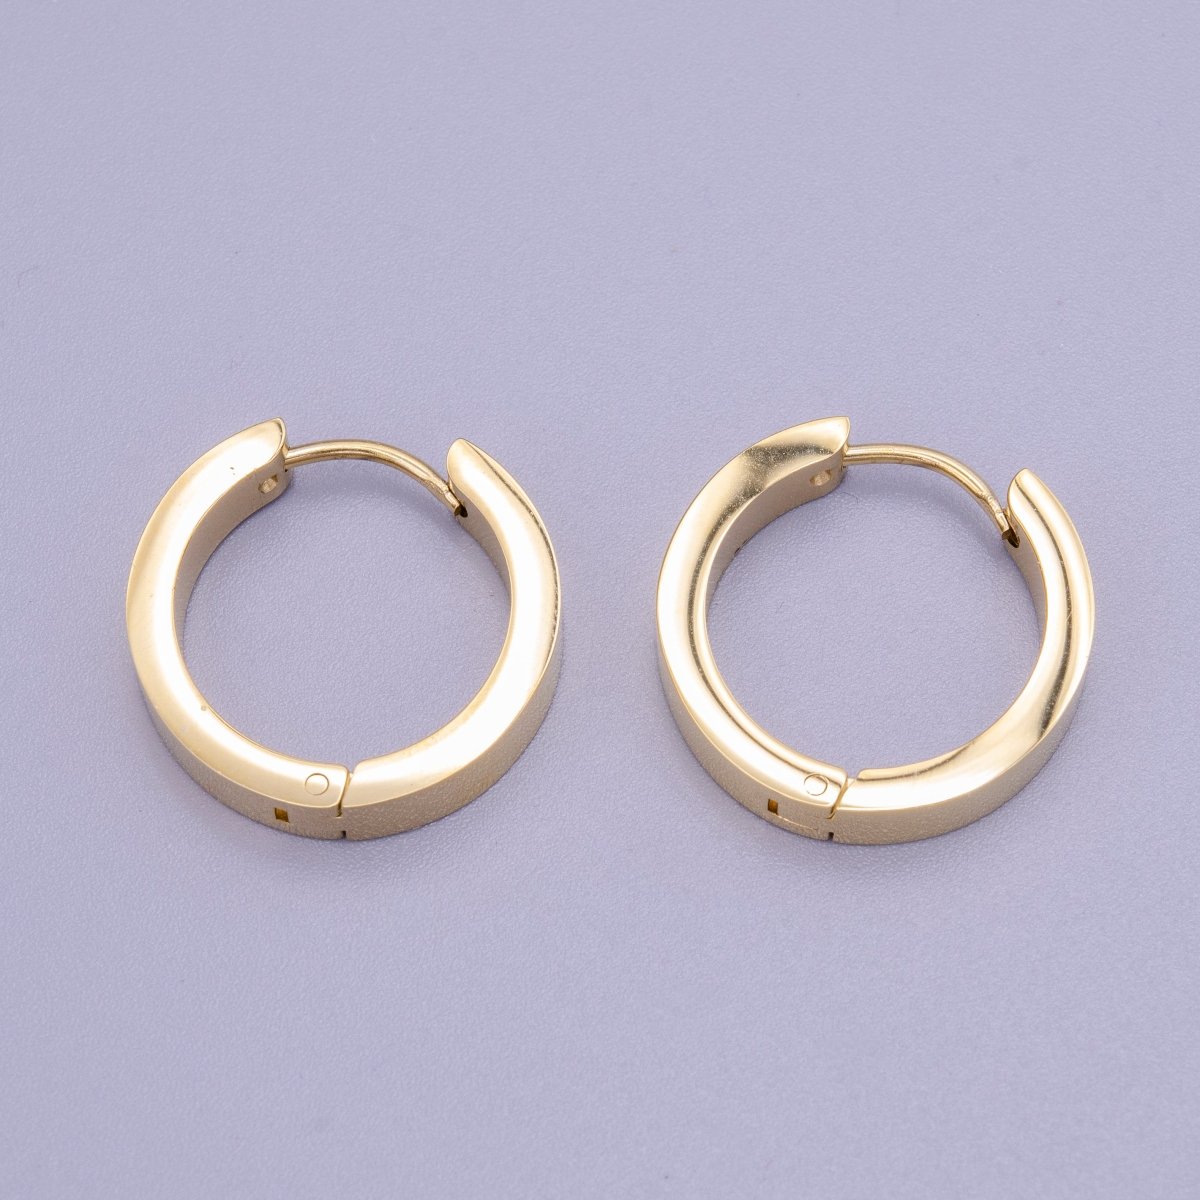 Stainless Steel 20mm Gold Flat Huggie Endless Hoop Earrings | AD1407 - DLUXCA